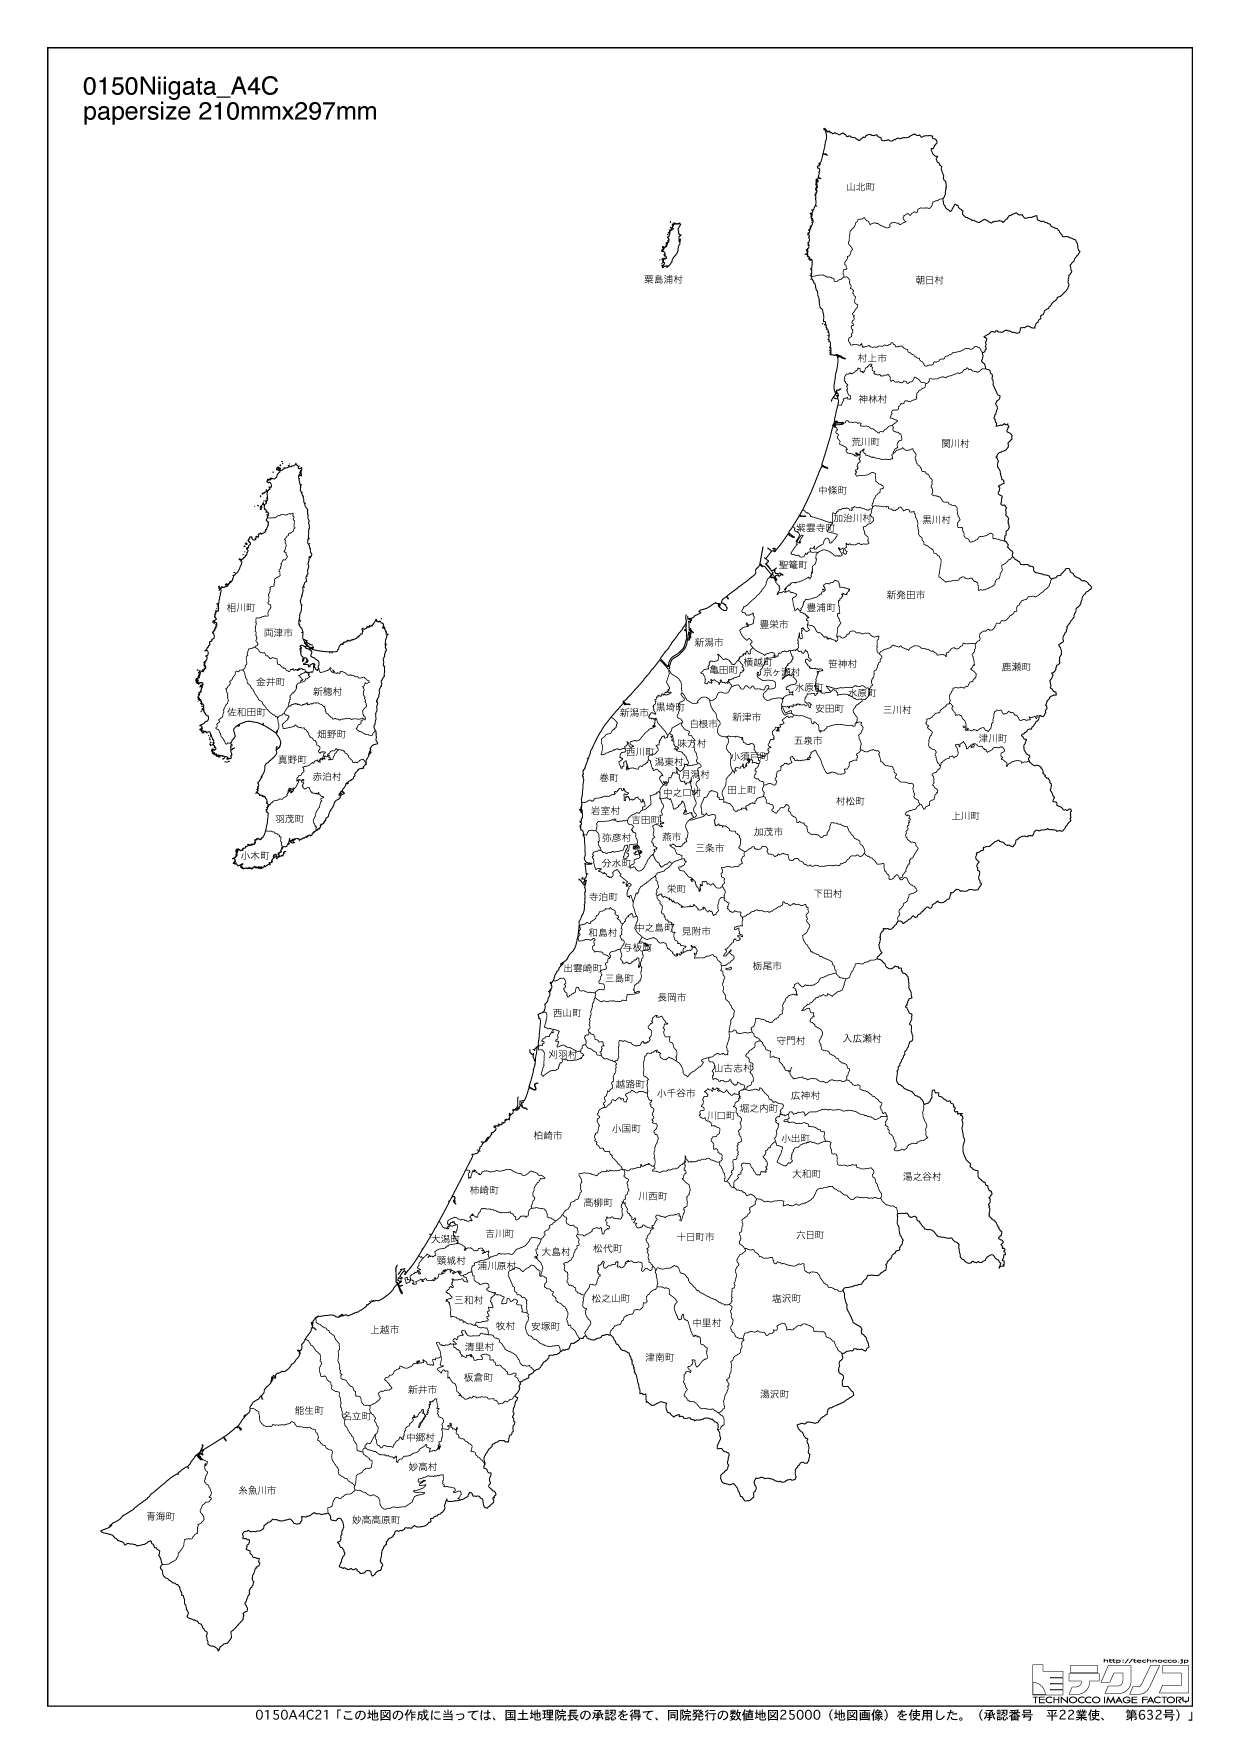 新潟県の白地図と市町村の合併情報